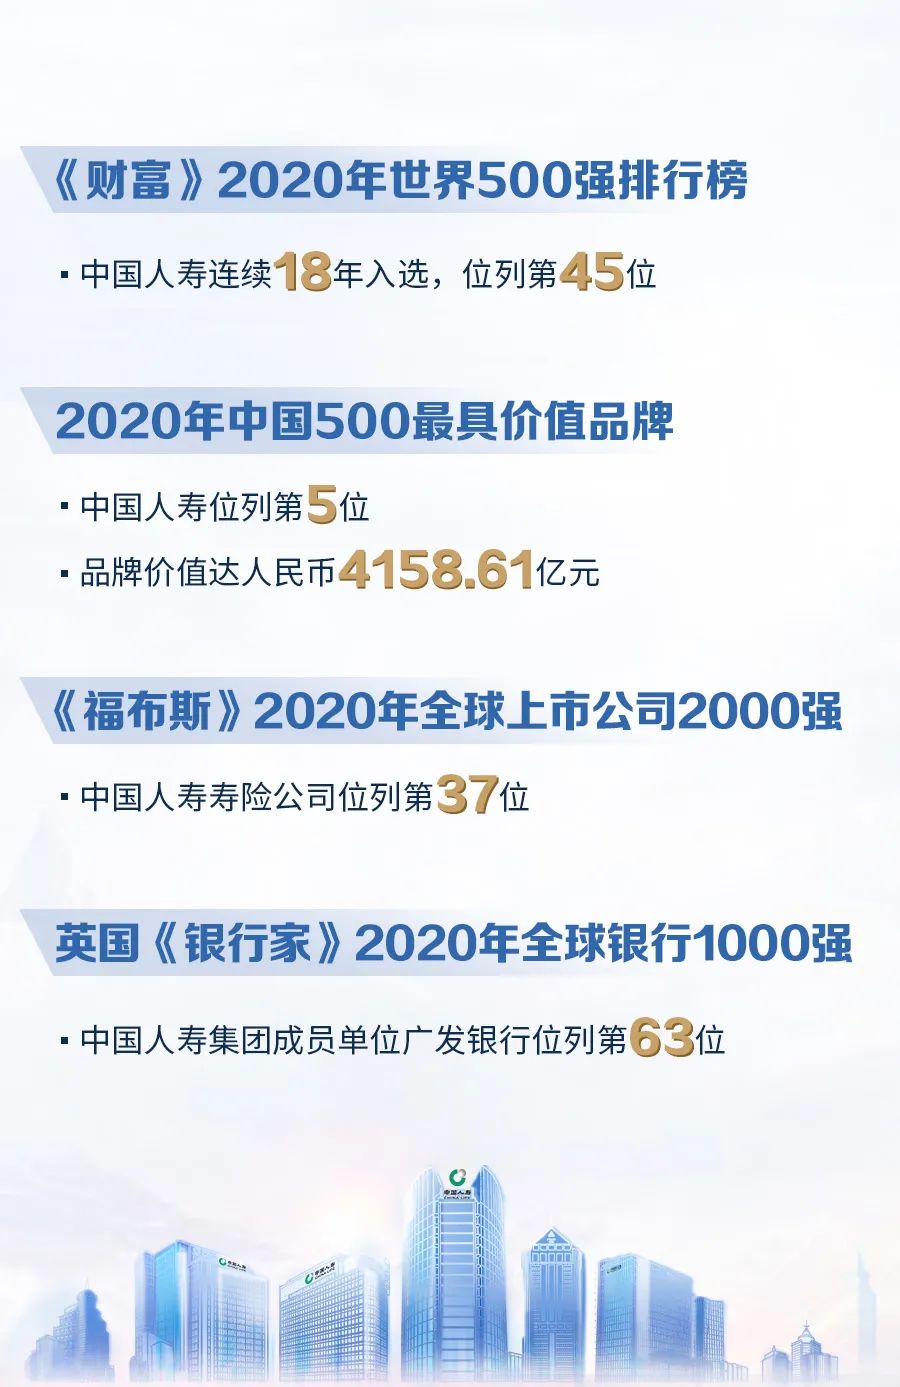 跻身前十中国人寿连续19年入选中国企业500强